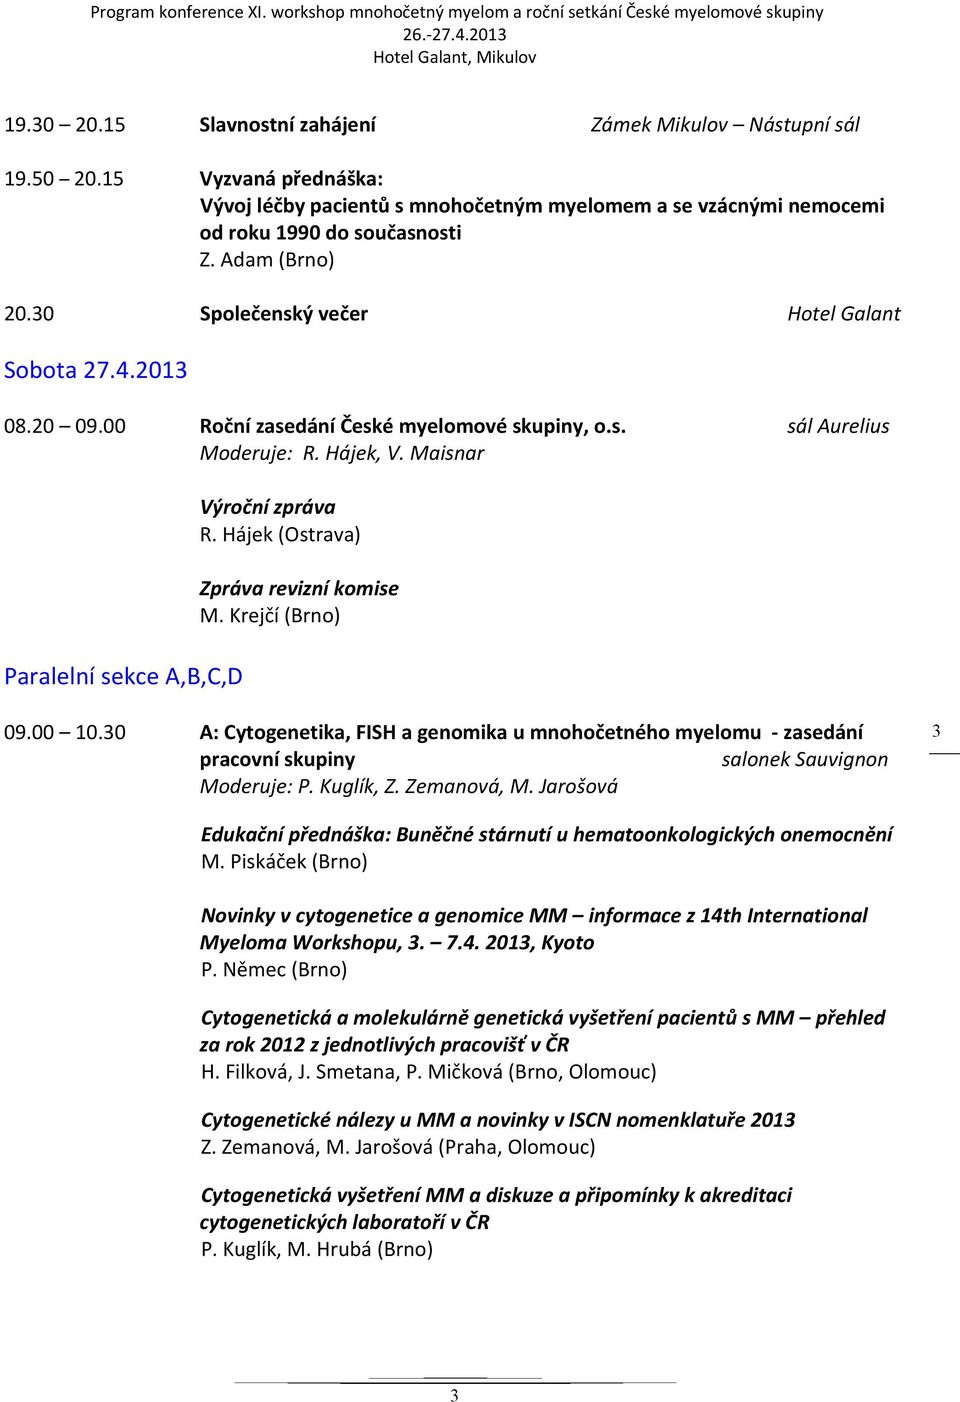 Maisnar Paralelní sekce A,B,C,D Výroční zpráva Zpráva revizní komise M. Krejčí (Brno) 09.00 10.